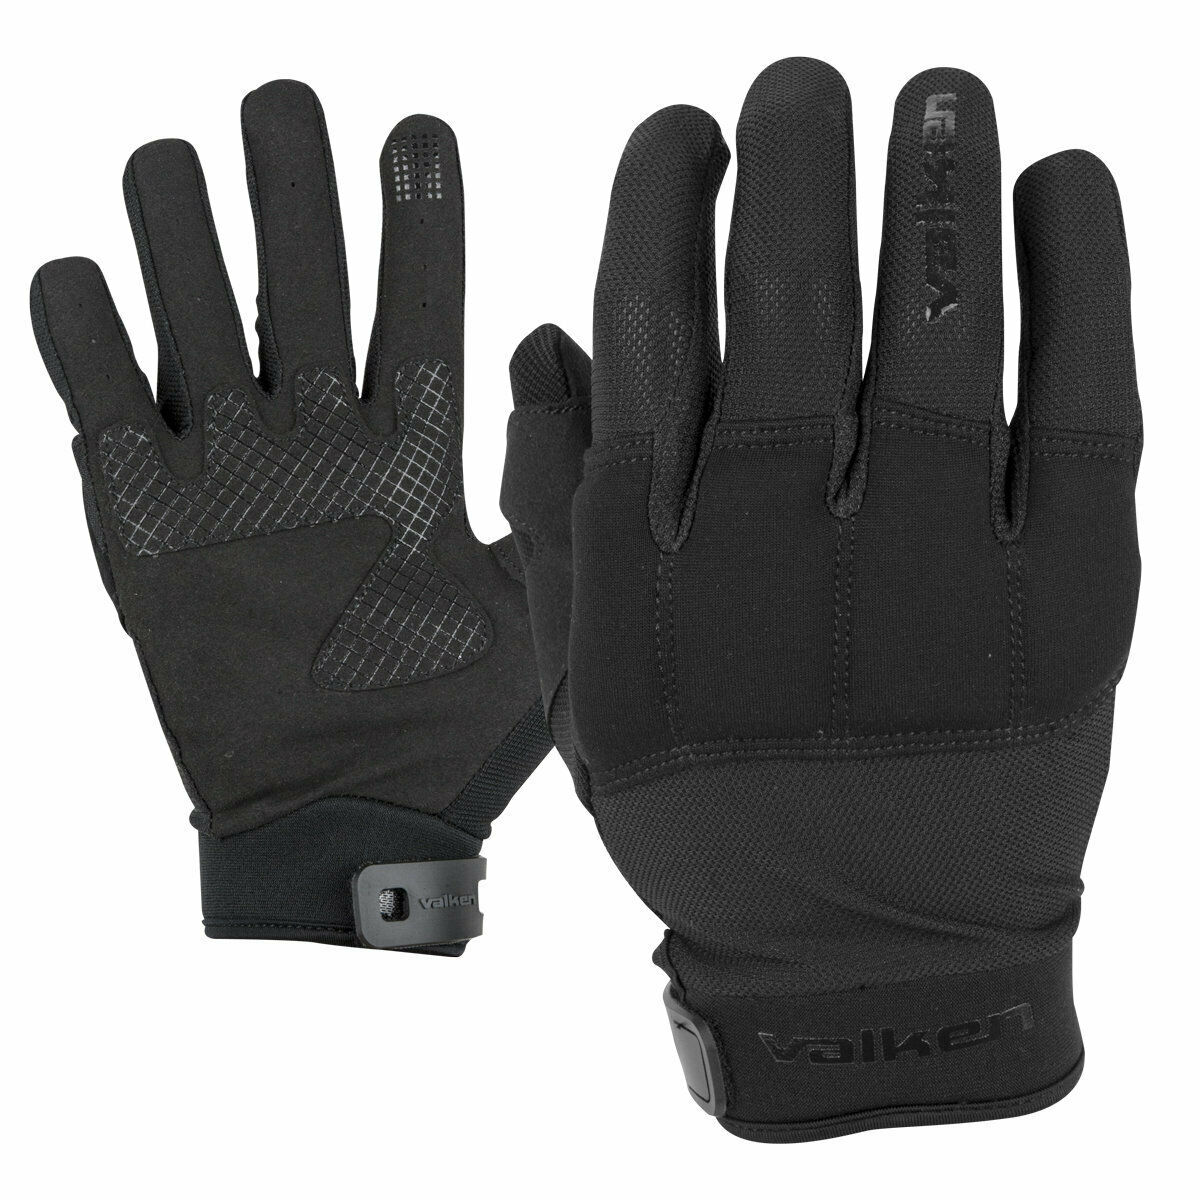 Valken Kilo Tactical Gloves - Black - Medium